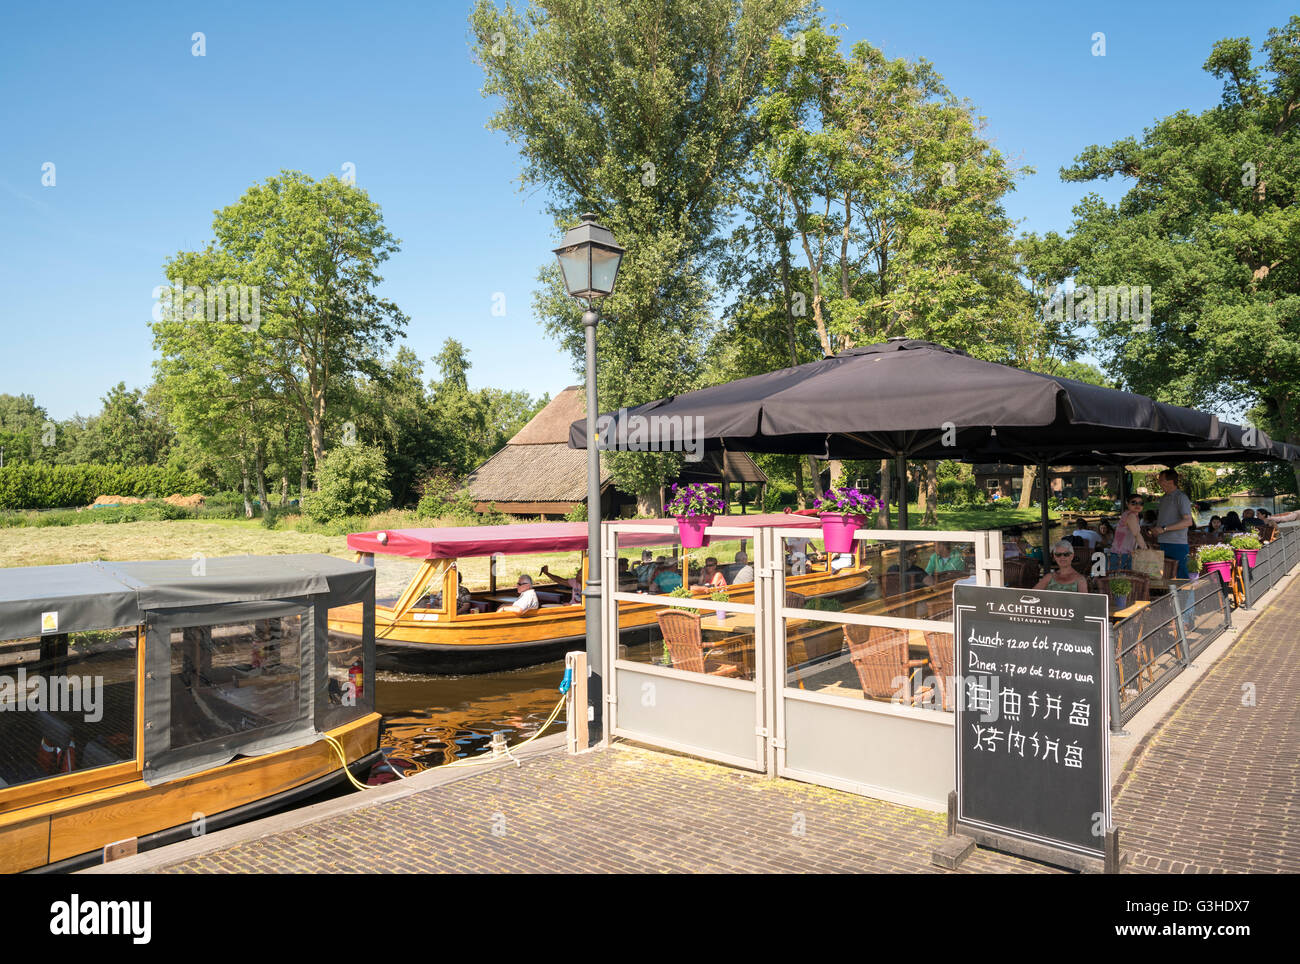 Giethoorn, Niederlande. Restaurant Terrasse ' t Achterhuus mit dem Kanalboot Tour führen. Melden Sie in Chinesisch für chinesische Touristen. Stockfoto